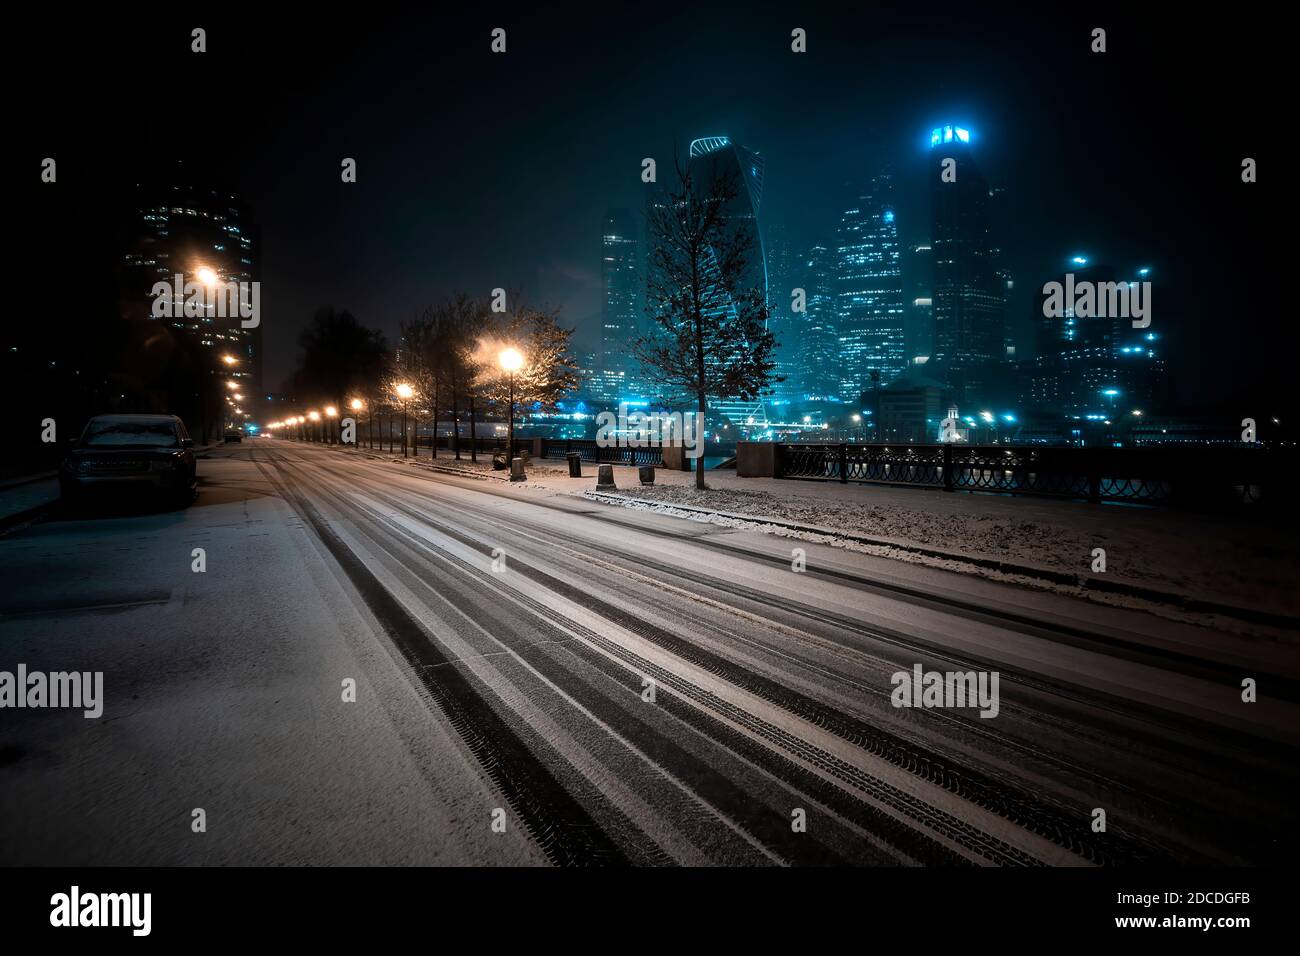 Mosca/Russia - 20 novembre 2020: Il paesaggio della città di Mosca con una strada innevata invernale di notte. Esposizione al buio Foto Stock